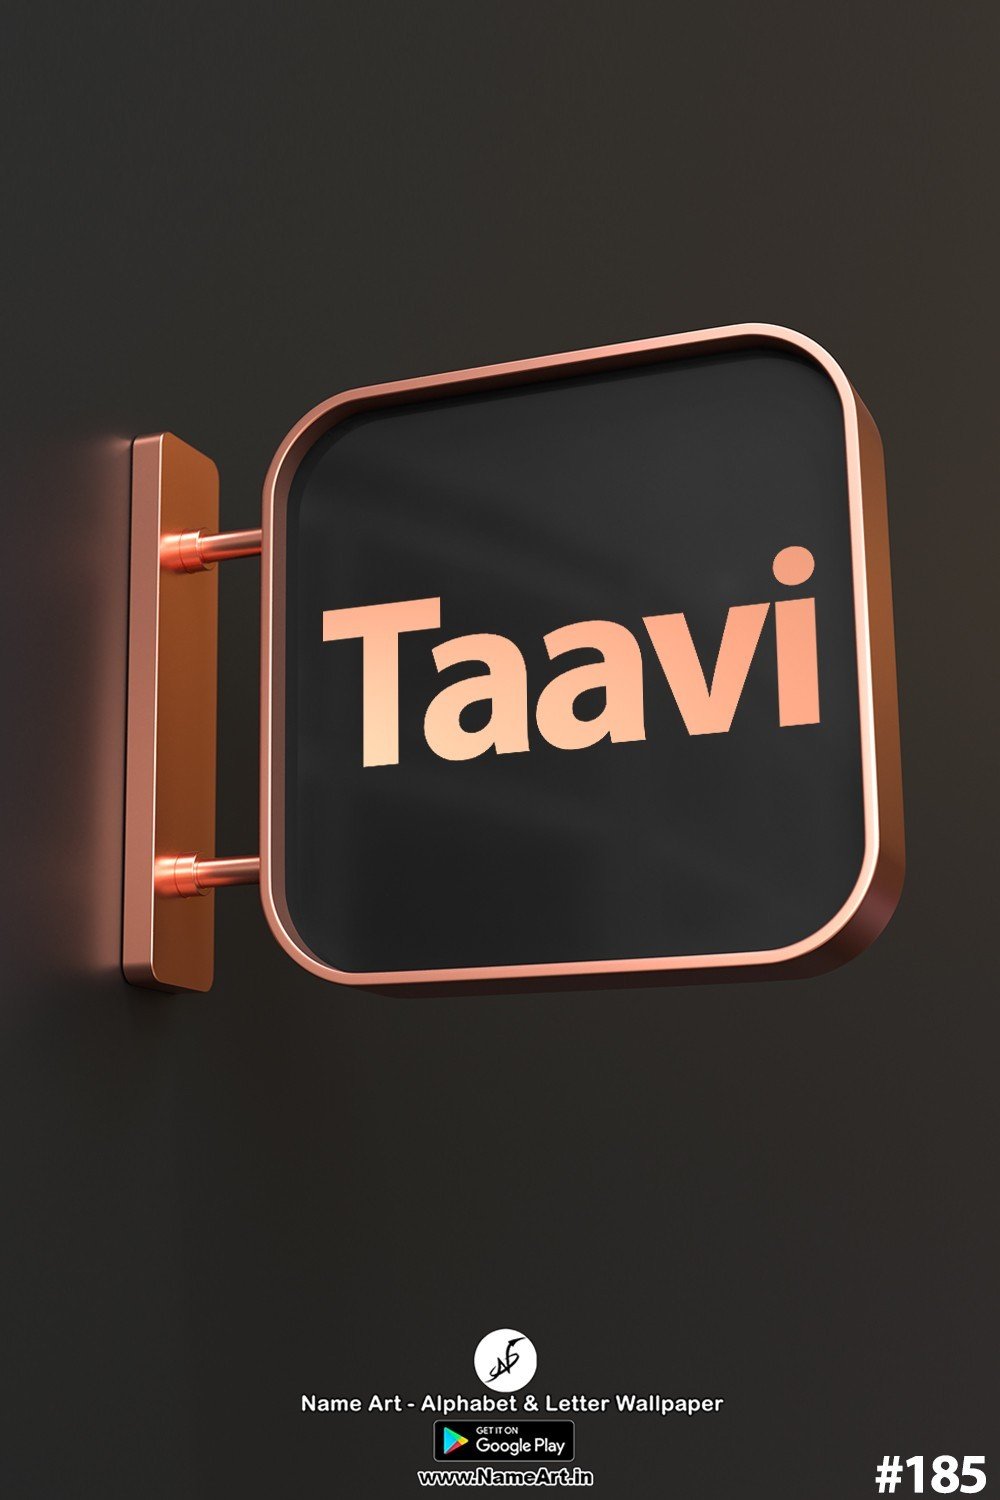 Taavi | Whatsapp Status Taavi | Happy Birthday Taavi !! | New Whatsapp Status Taavi Images |